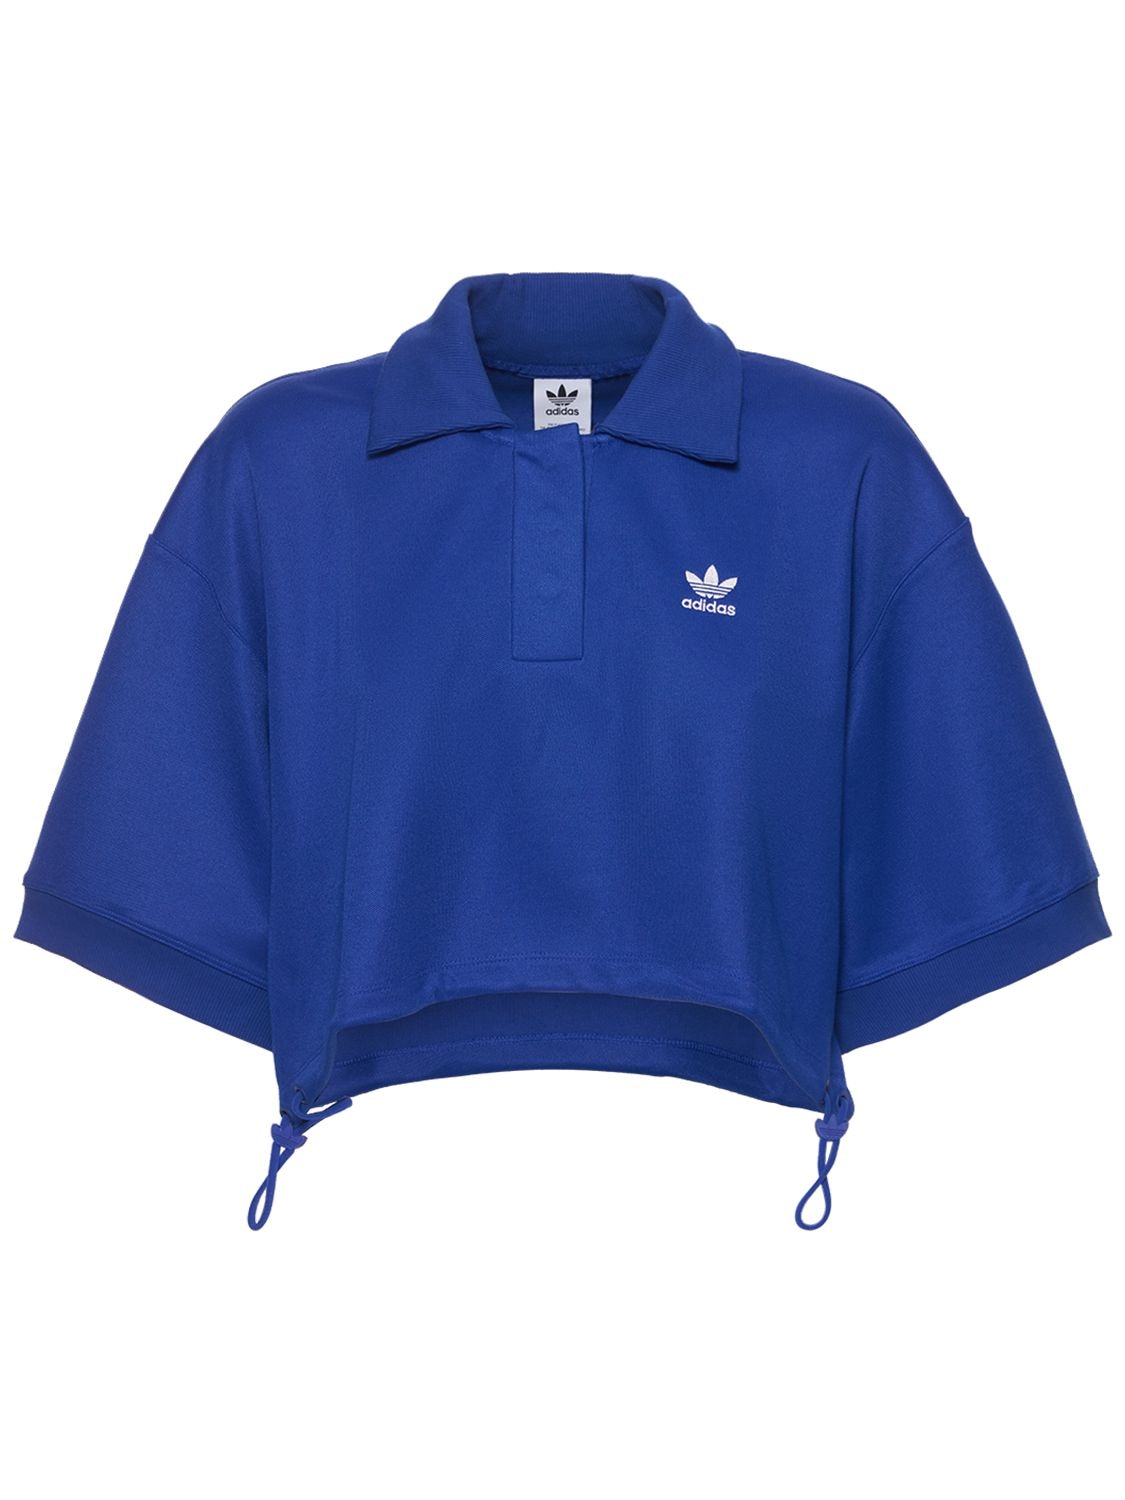 Adidas Originals Crop Polo Top In Blue | ModeSens